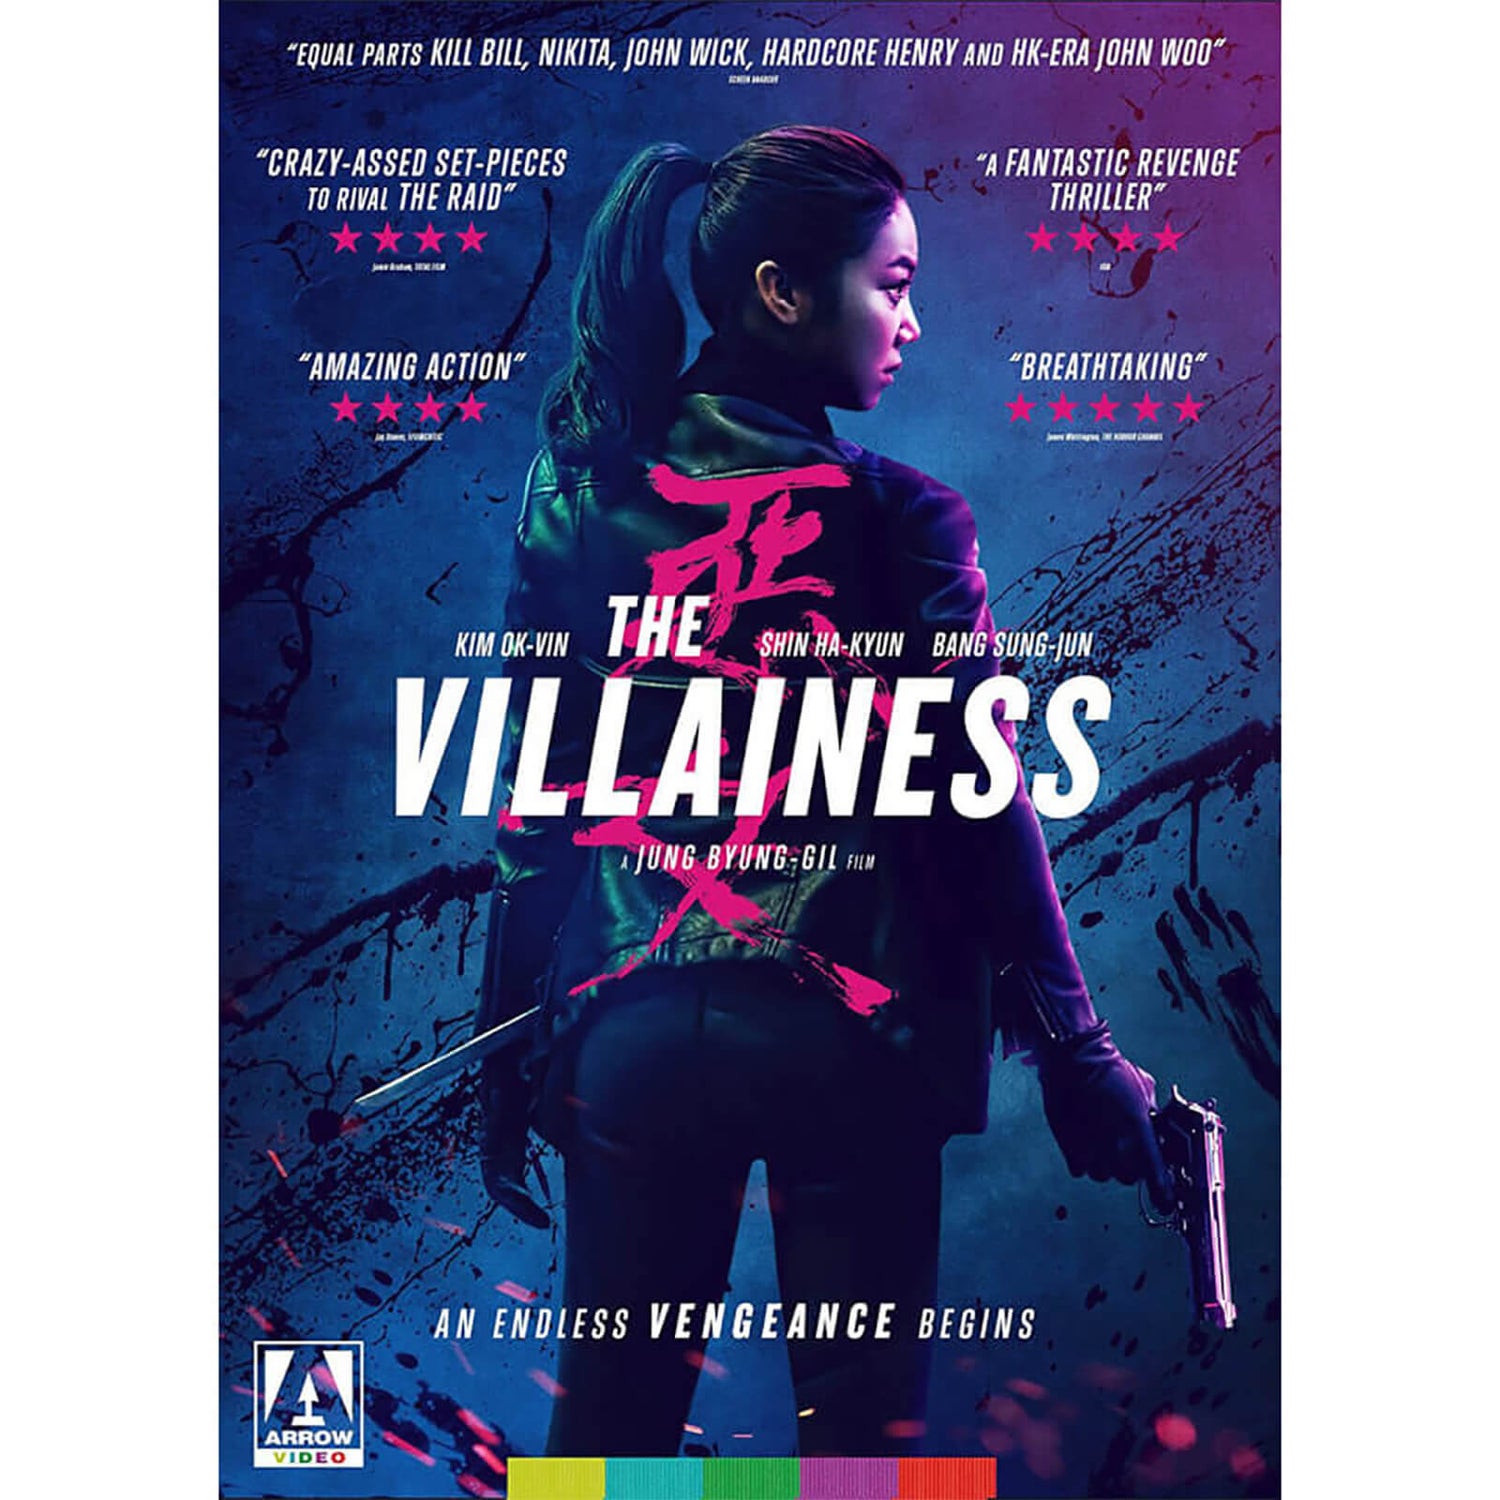 The Villainess DVD